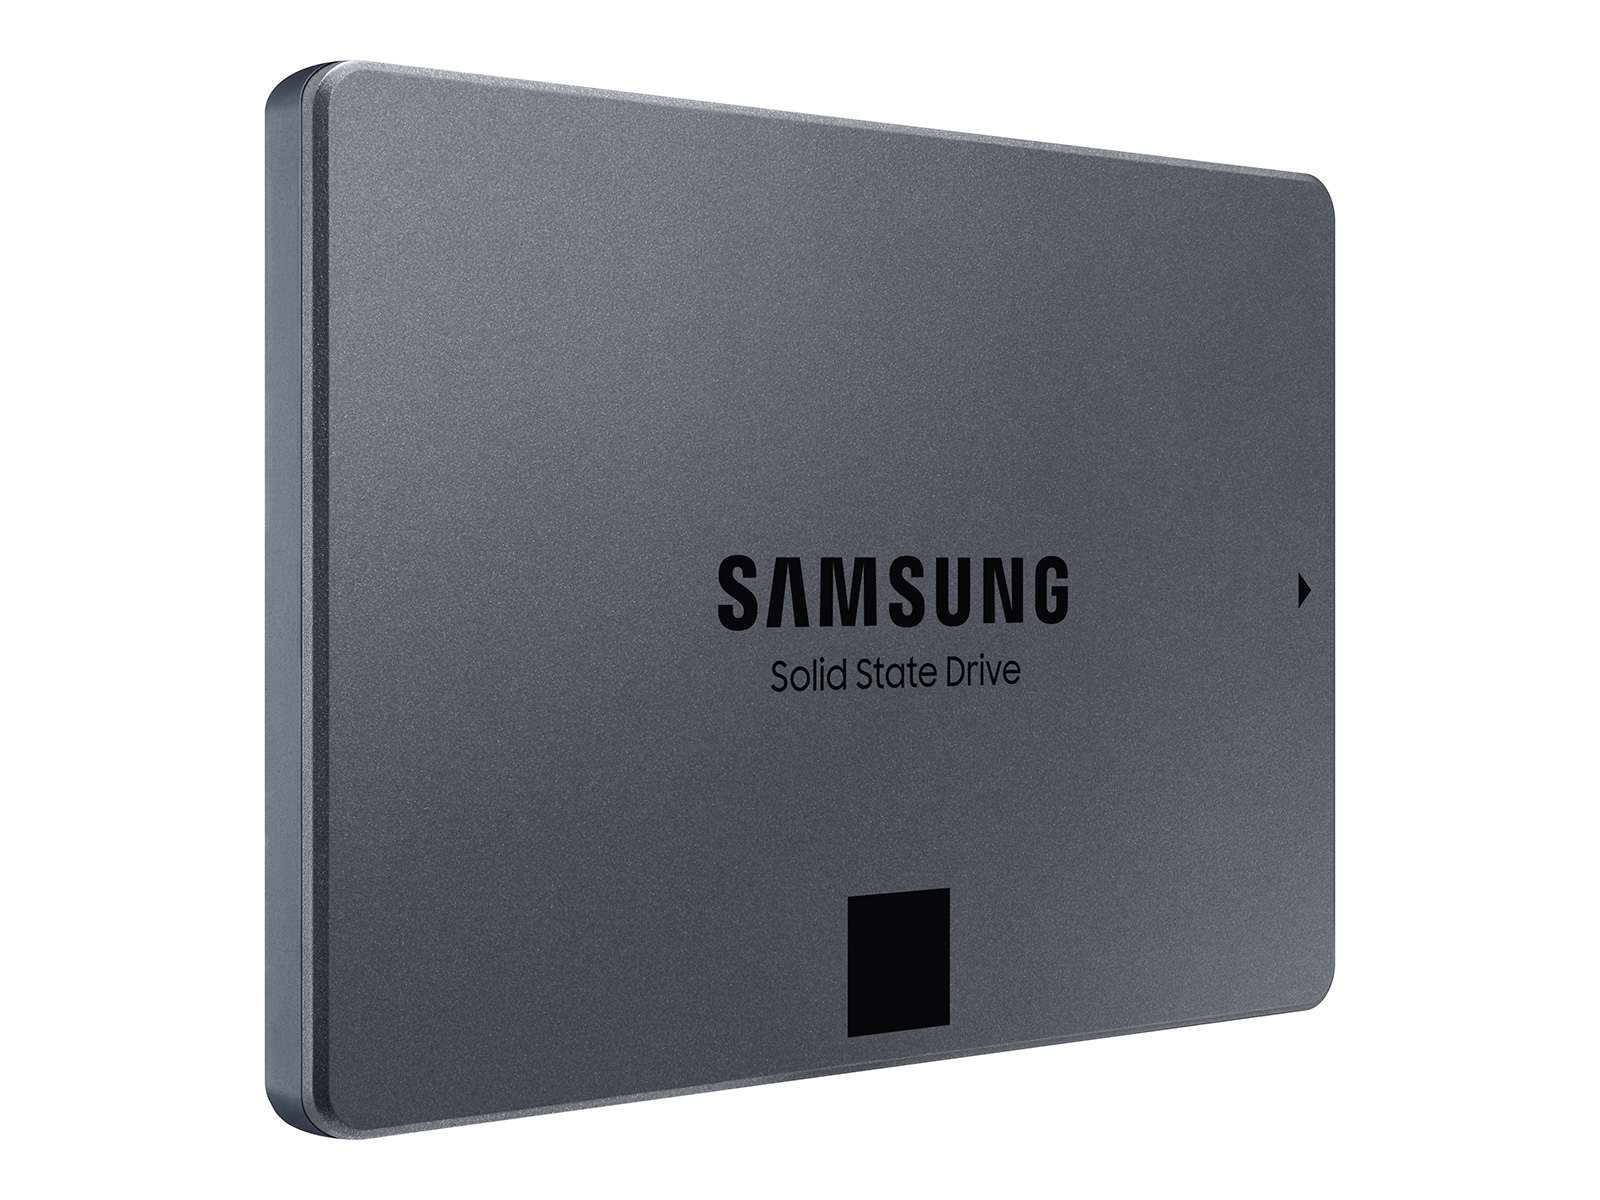 【SSD 1TB】Samsung 870 QVO MZ-77Q1T0B/IT